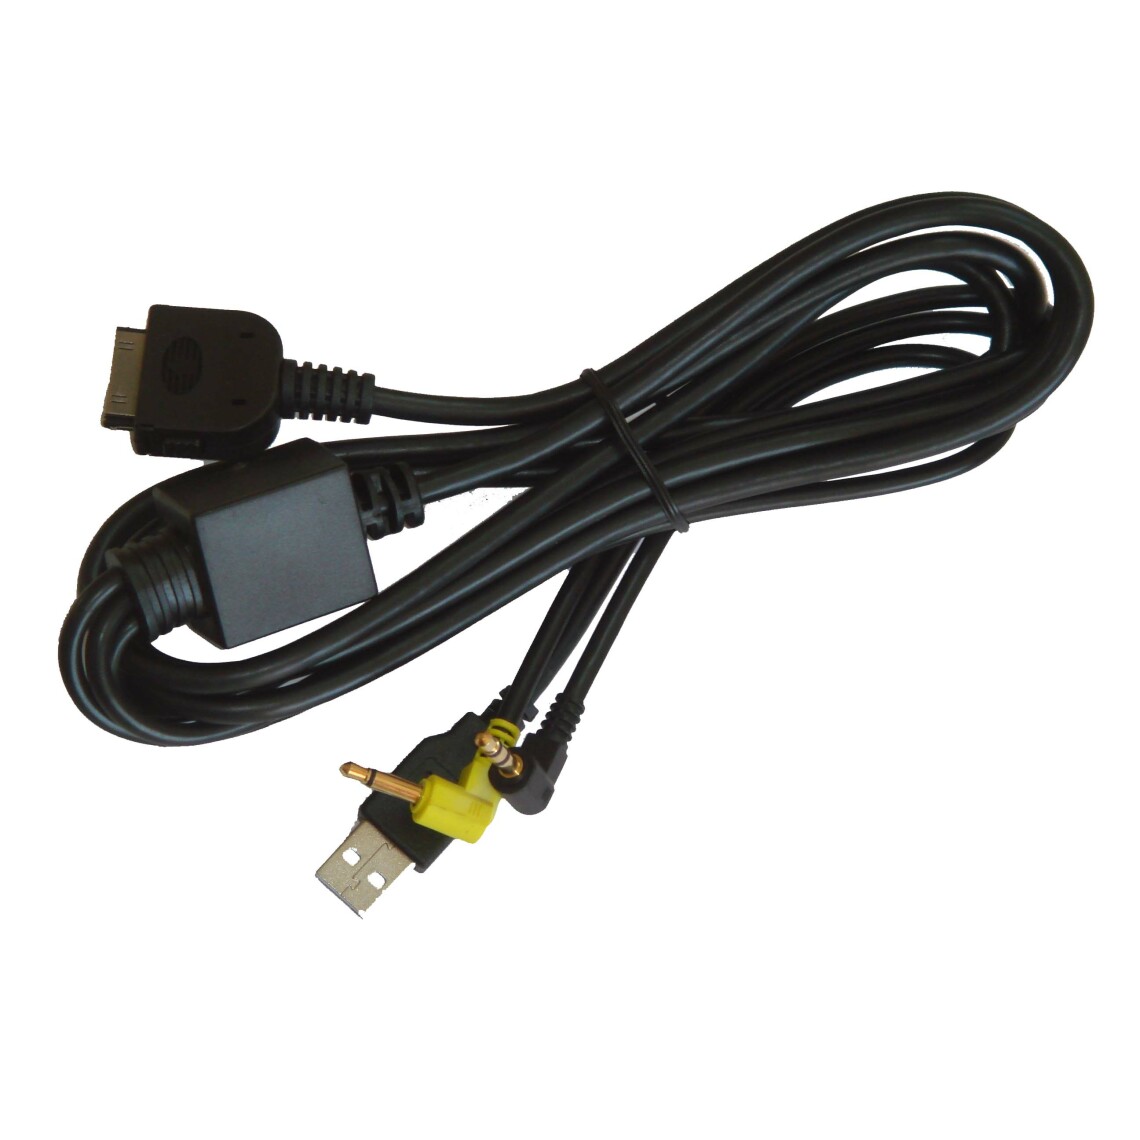 Vhbw - vhbw Câble adaptateur de ligne AUX Radio compatible avec Apple iPod Nano 1G, 2G, 3G, 4G voiture, véhicule, USB, prise jack AV Line-In - Alimentation modulaire